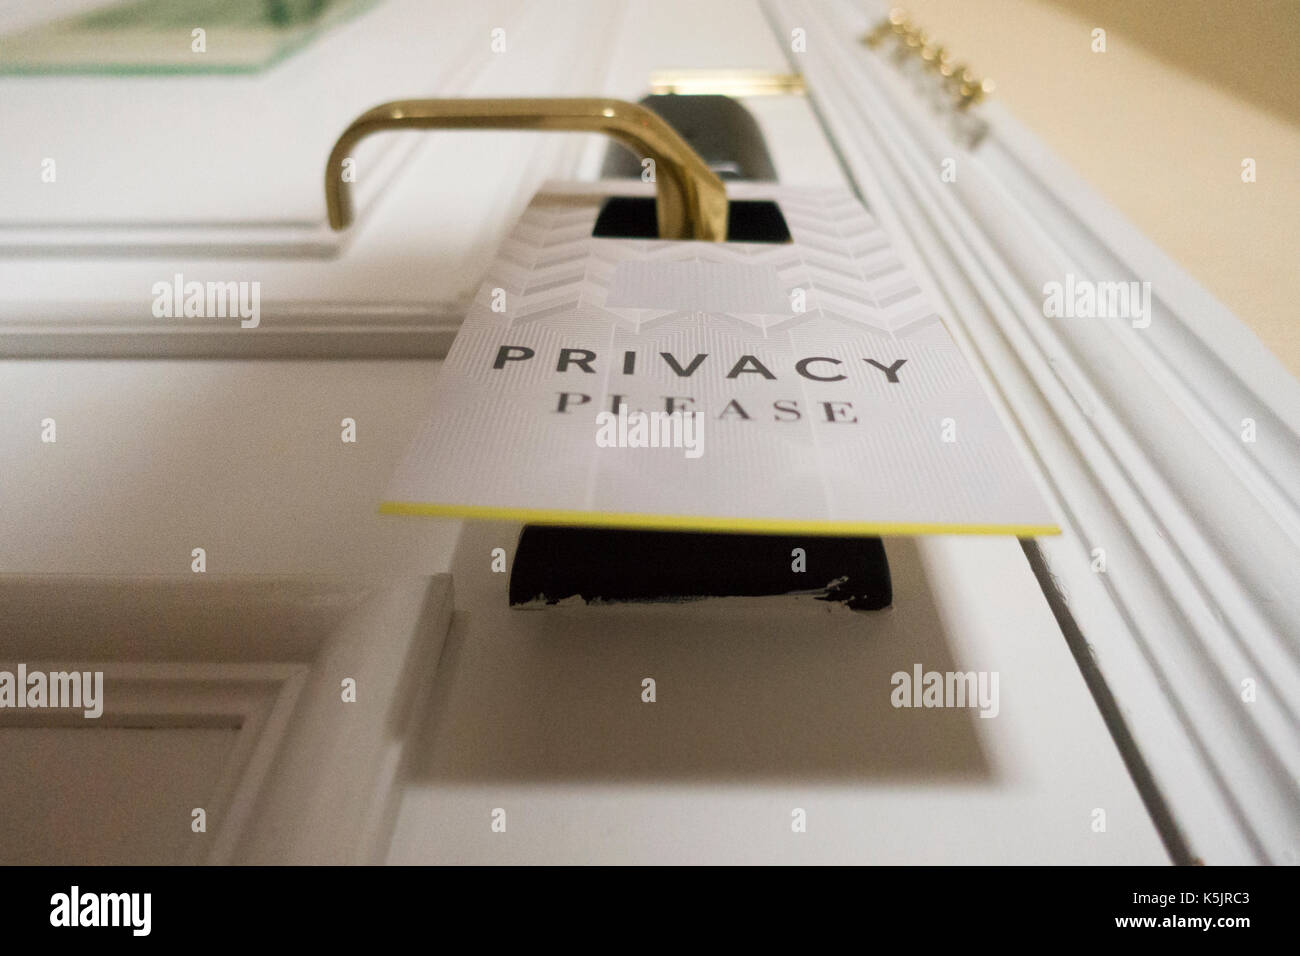 Close up of privacy sign montrant la confidentialité, veuillez à l'extérieur d'une porte de l'hôtel à la chaîne bien connue d'hôtels Hôtel Marriot, Egland, UK Banque D'Images